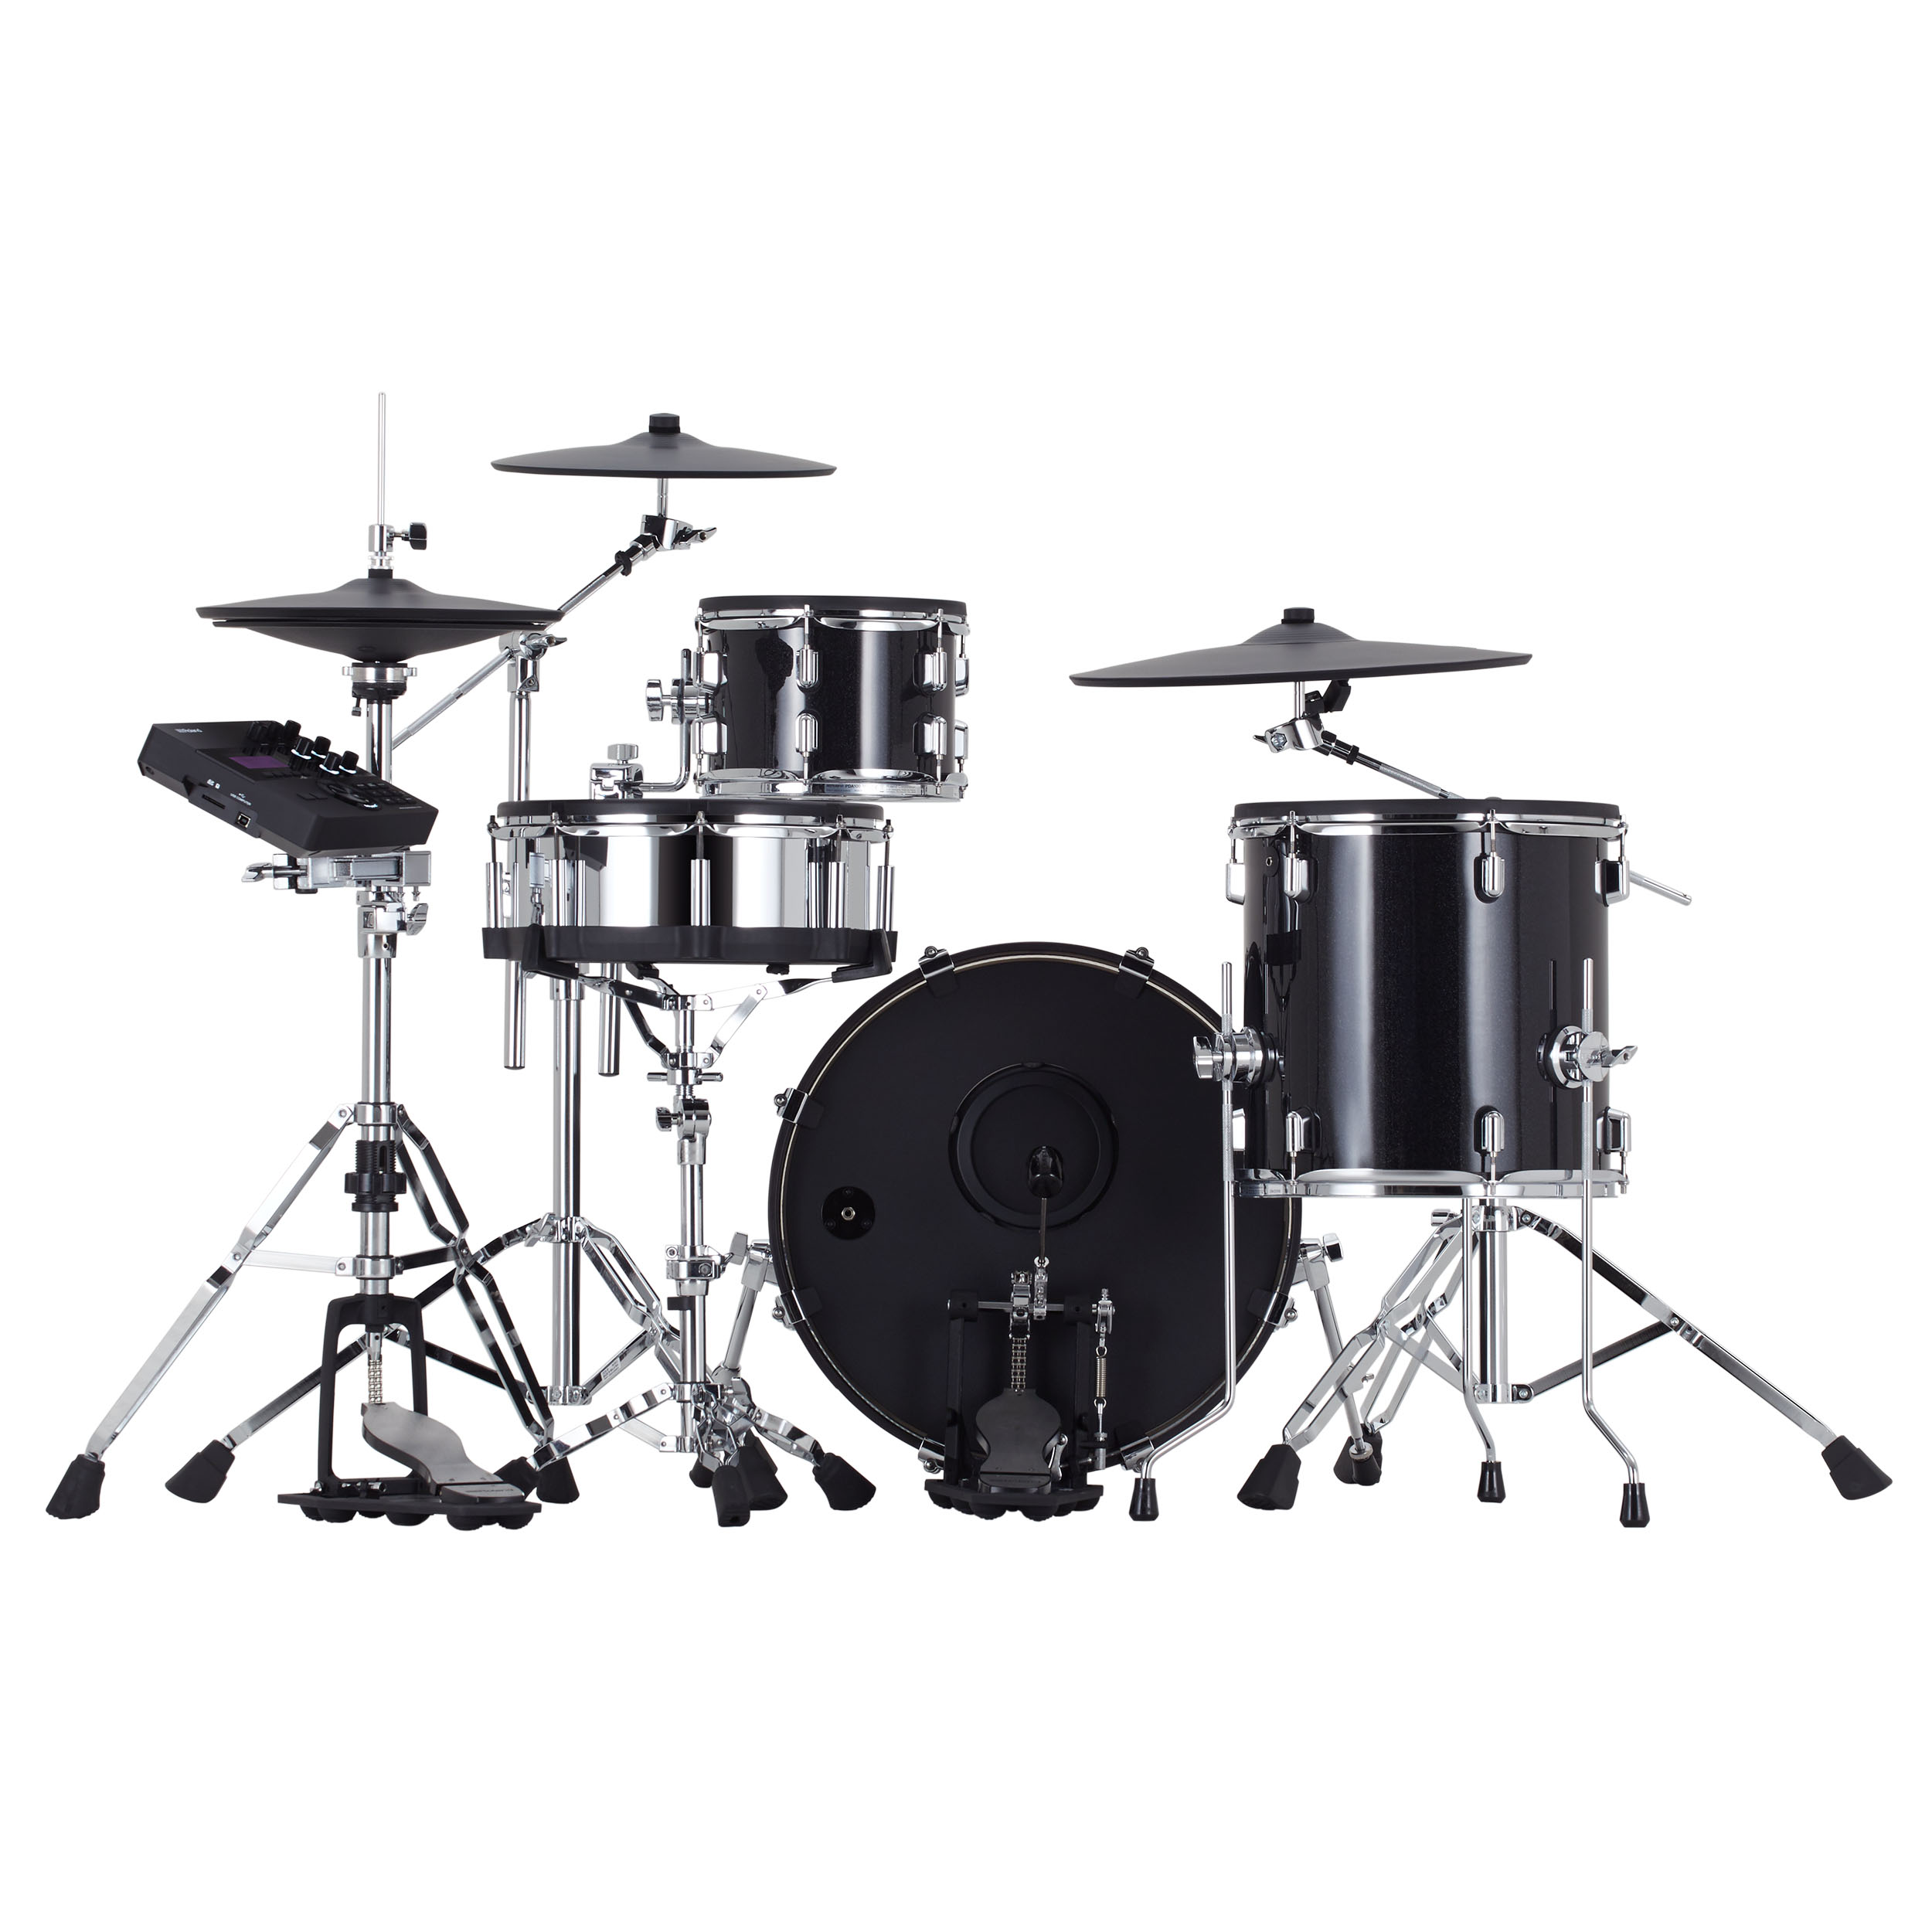 Roland Vad 504 V-drums Acoustic Design 5 Futs - Batería electrónica completa - Variation 1